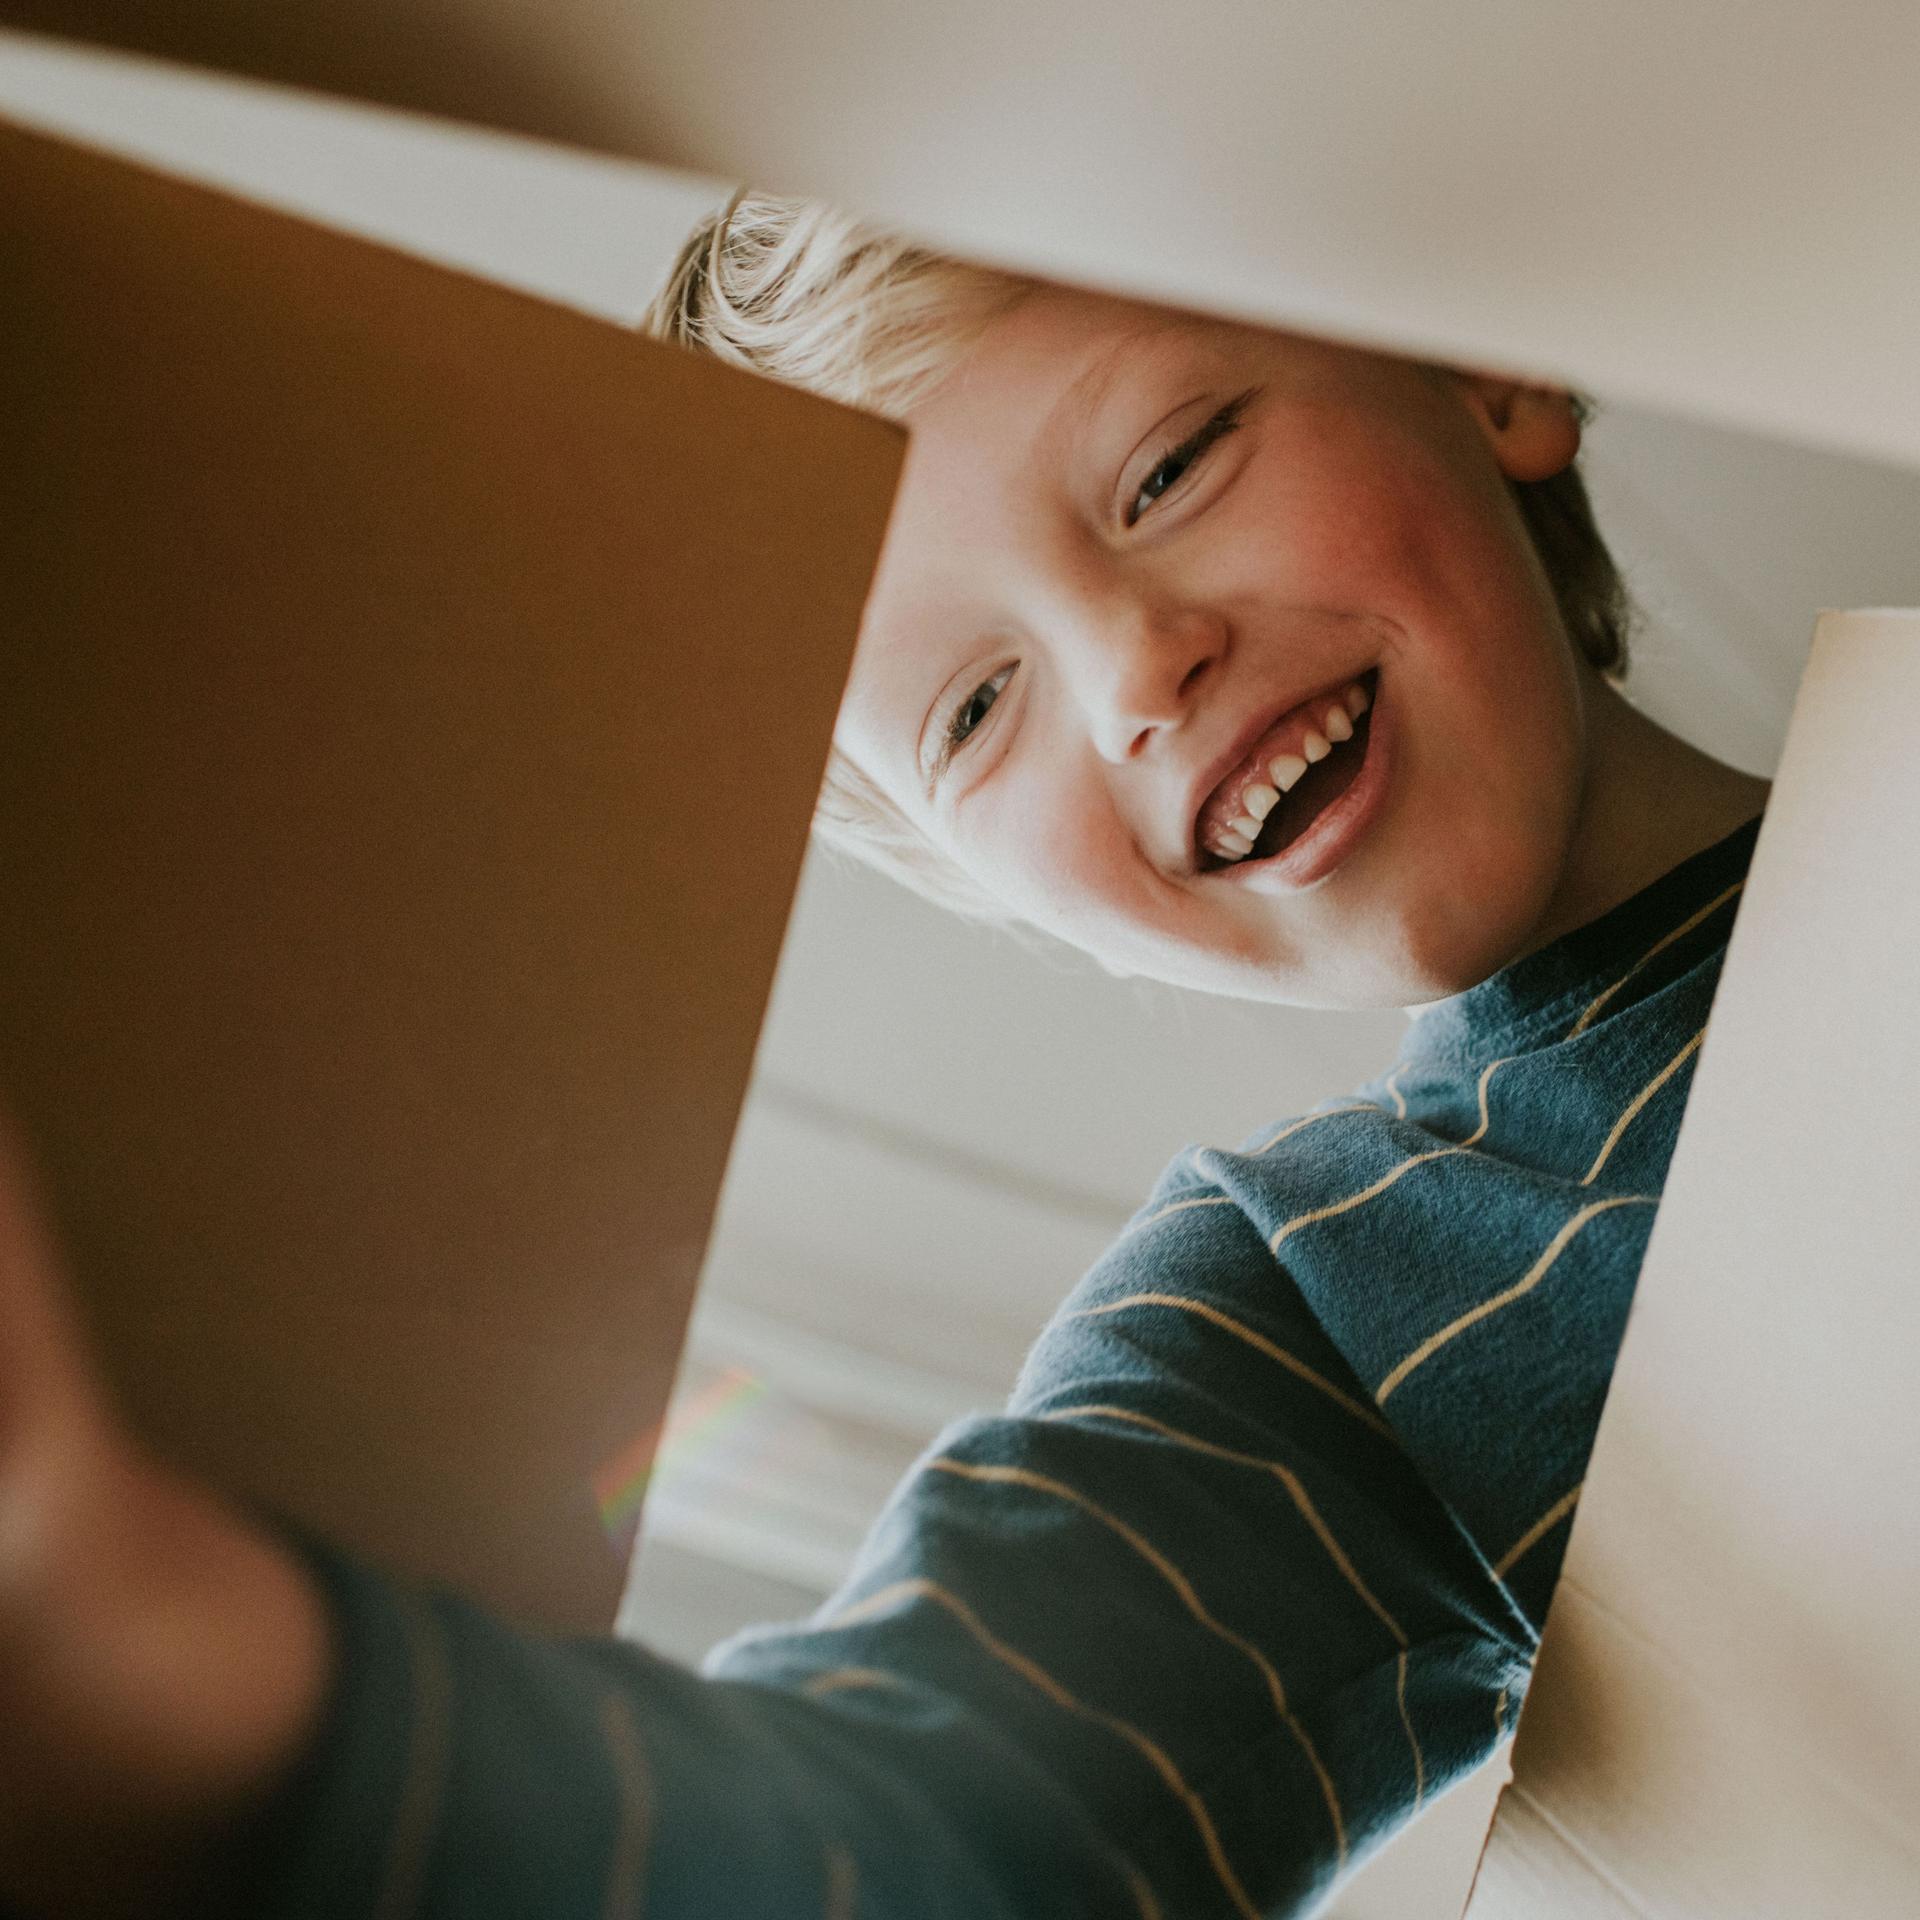 Aus der Froschperspektive aufgenommenes Bild von einem lachenden Jungen, der einen Karton öffnet. 